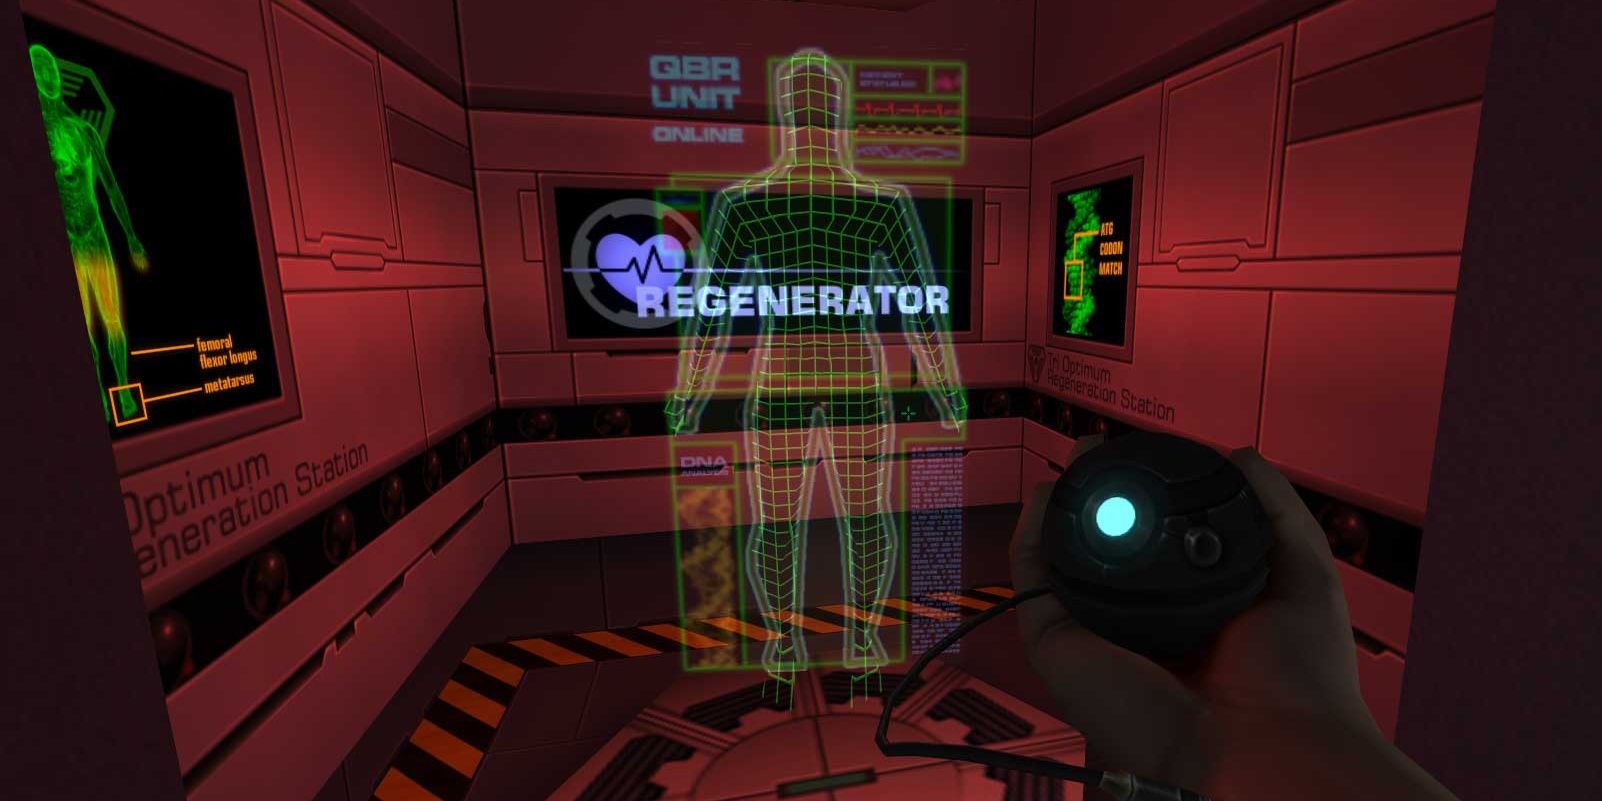 Regeneration Station in System Shock 2